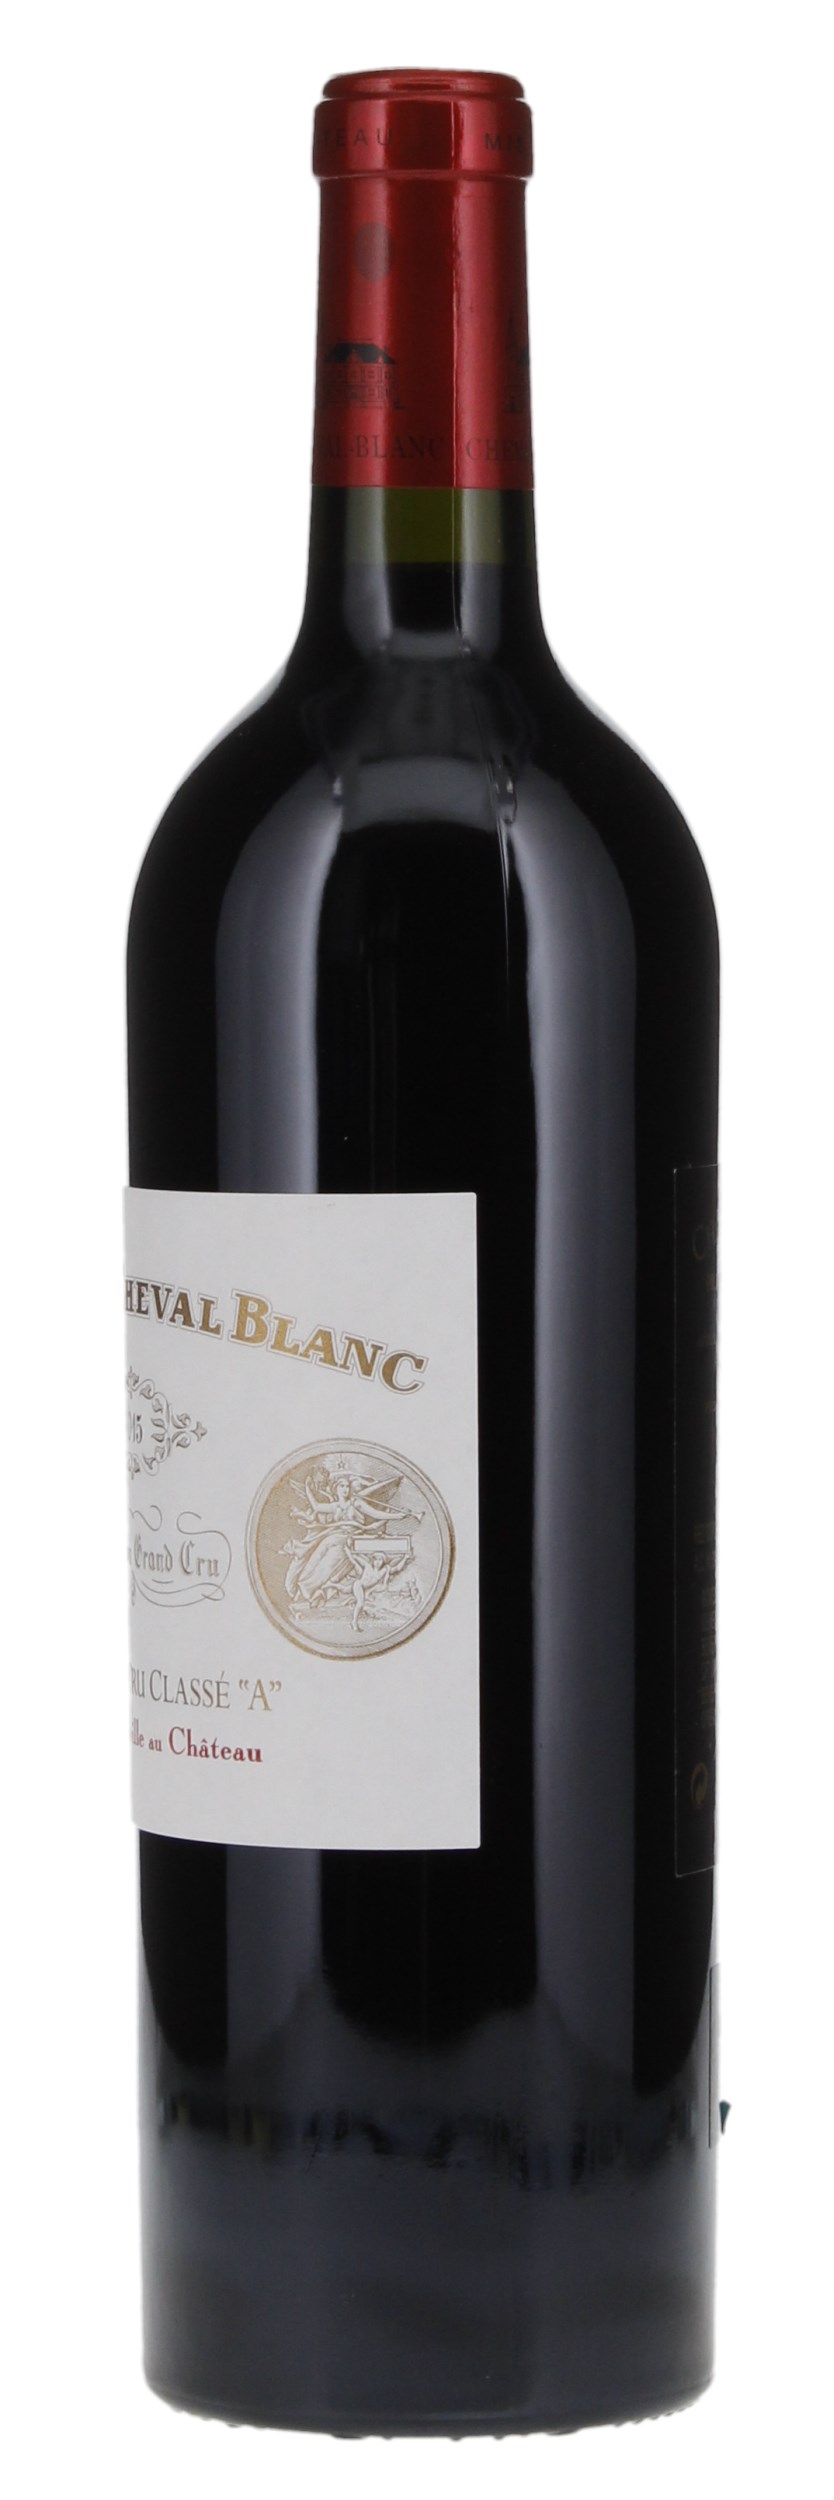 2015 Château Cheval-Blanc, 750ml